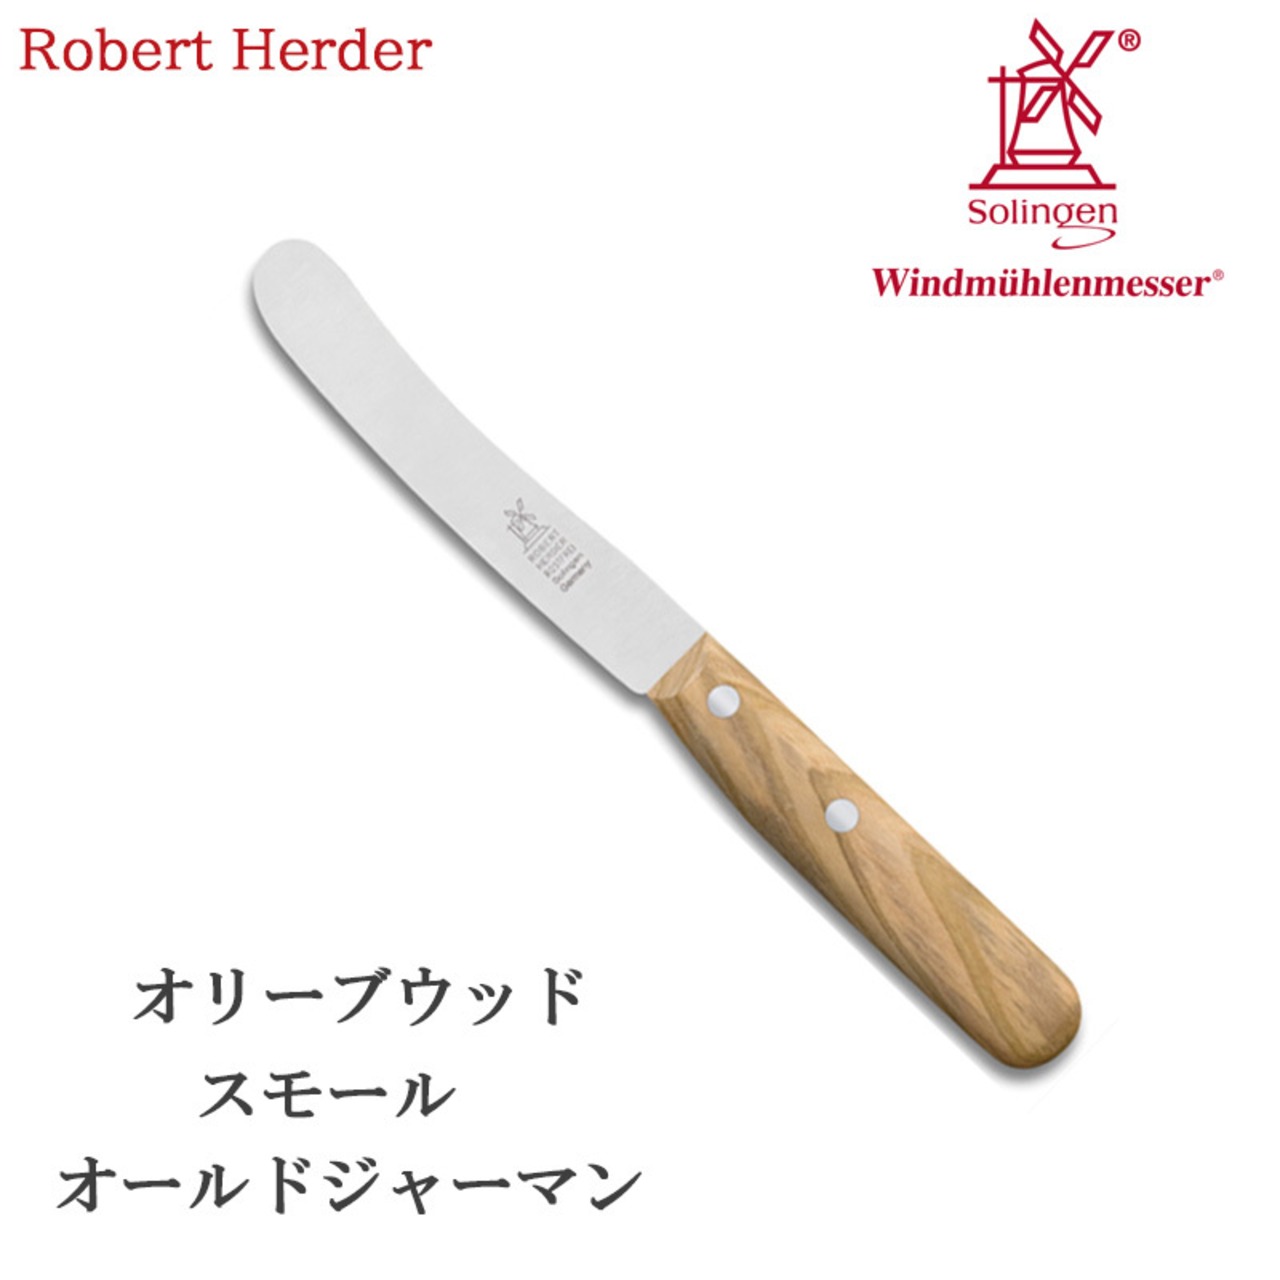 ロベルトヘアダー オリーブウッド スモールオールドジャーマン(食卓用万能ナイフ) 2001.375.05 テーブルナイフ